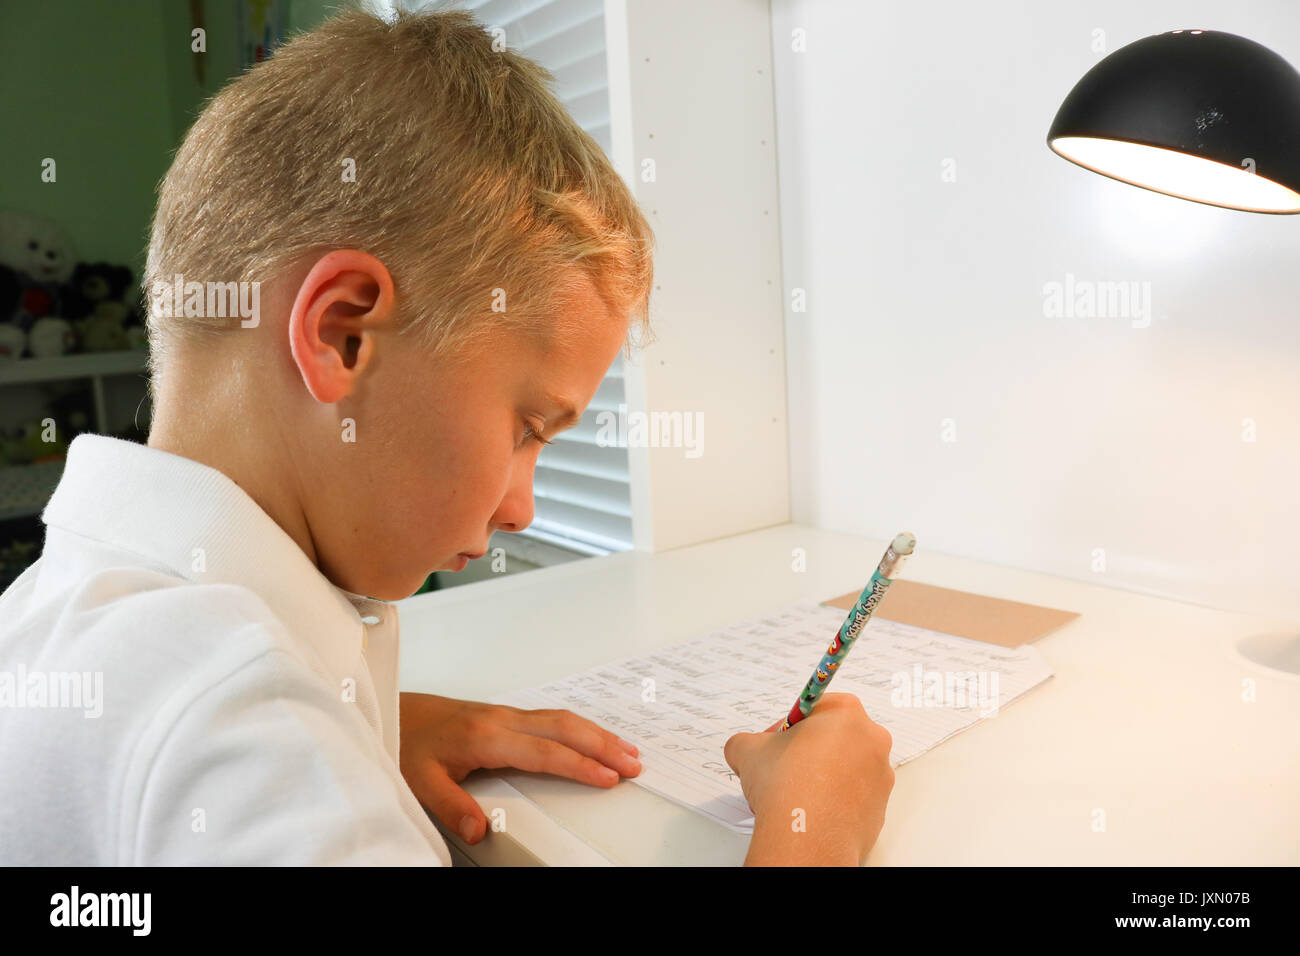 Close up portrait of a young boy doing homework écrit Banque D'Images